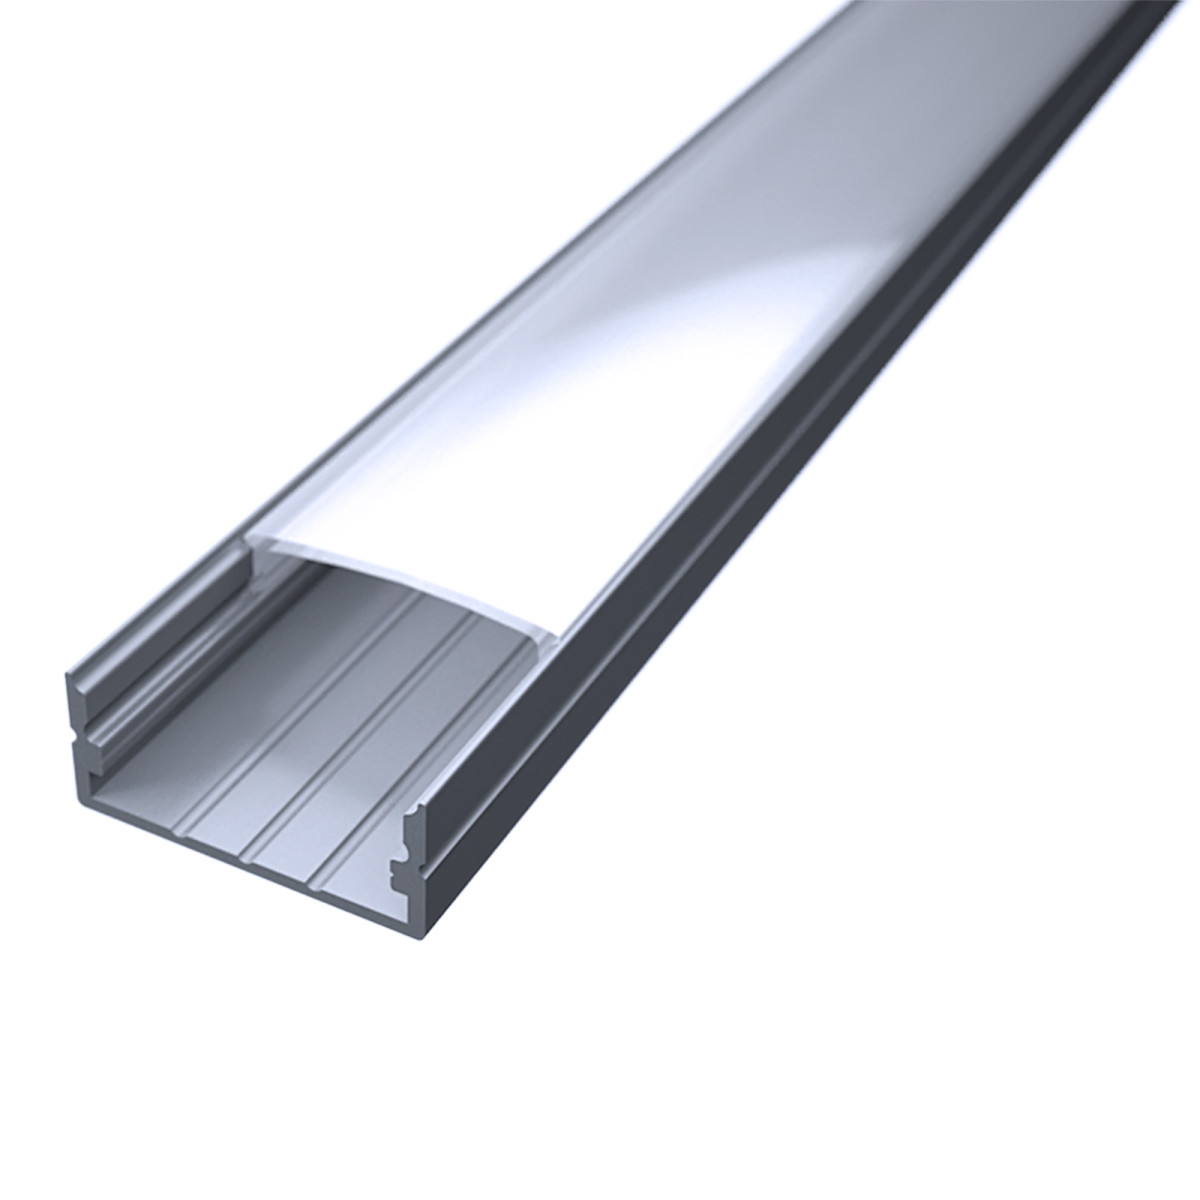 LED Flachprofil "Slim-Line max" | Abdeckung diffus | Zuschnitt auf 154cm |